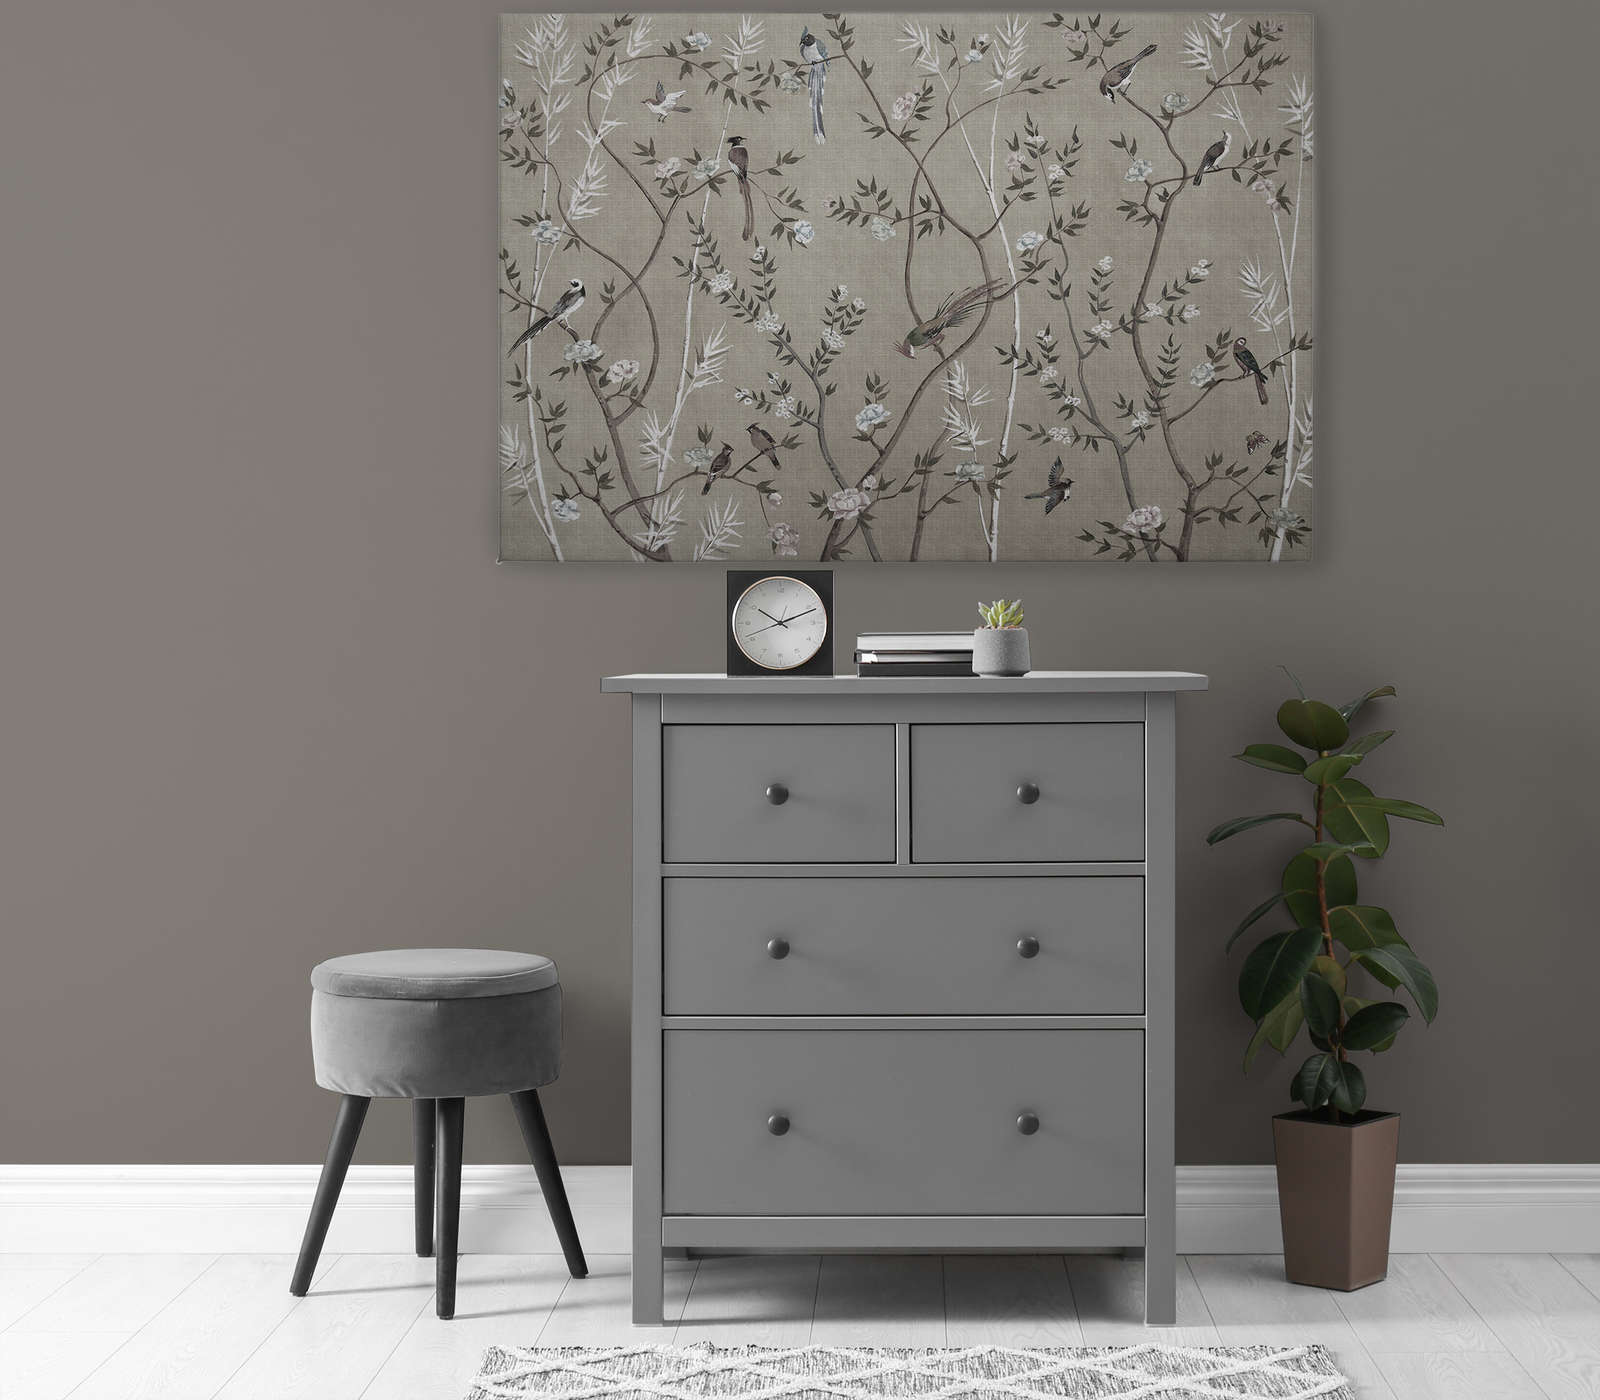             Tea Room 2 - Canvas schilderij Birds & Flowers Design in Greige - 1,20 m x 0,80 m
        